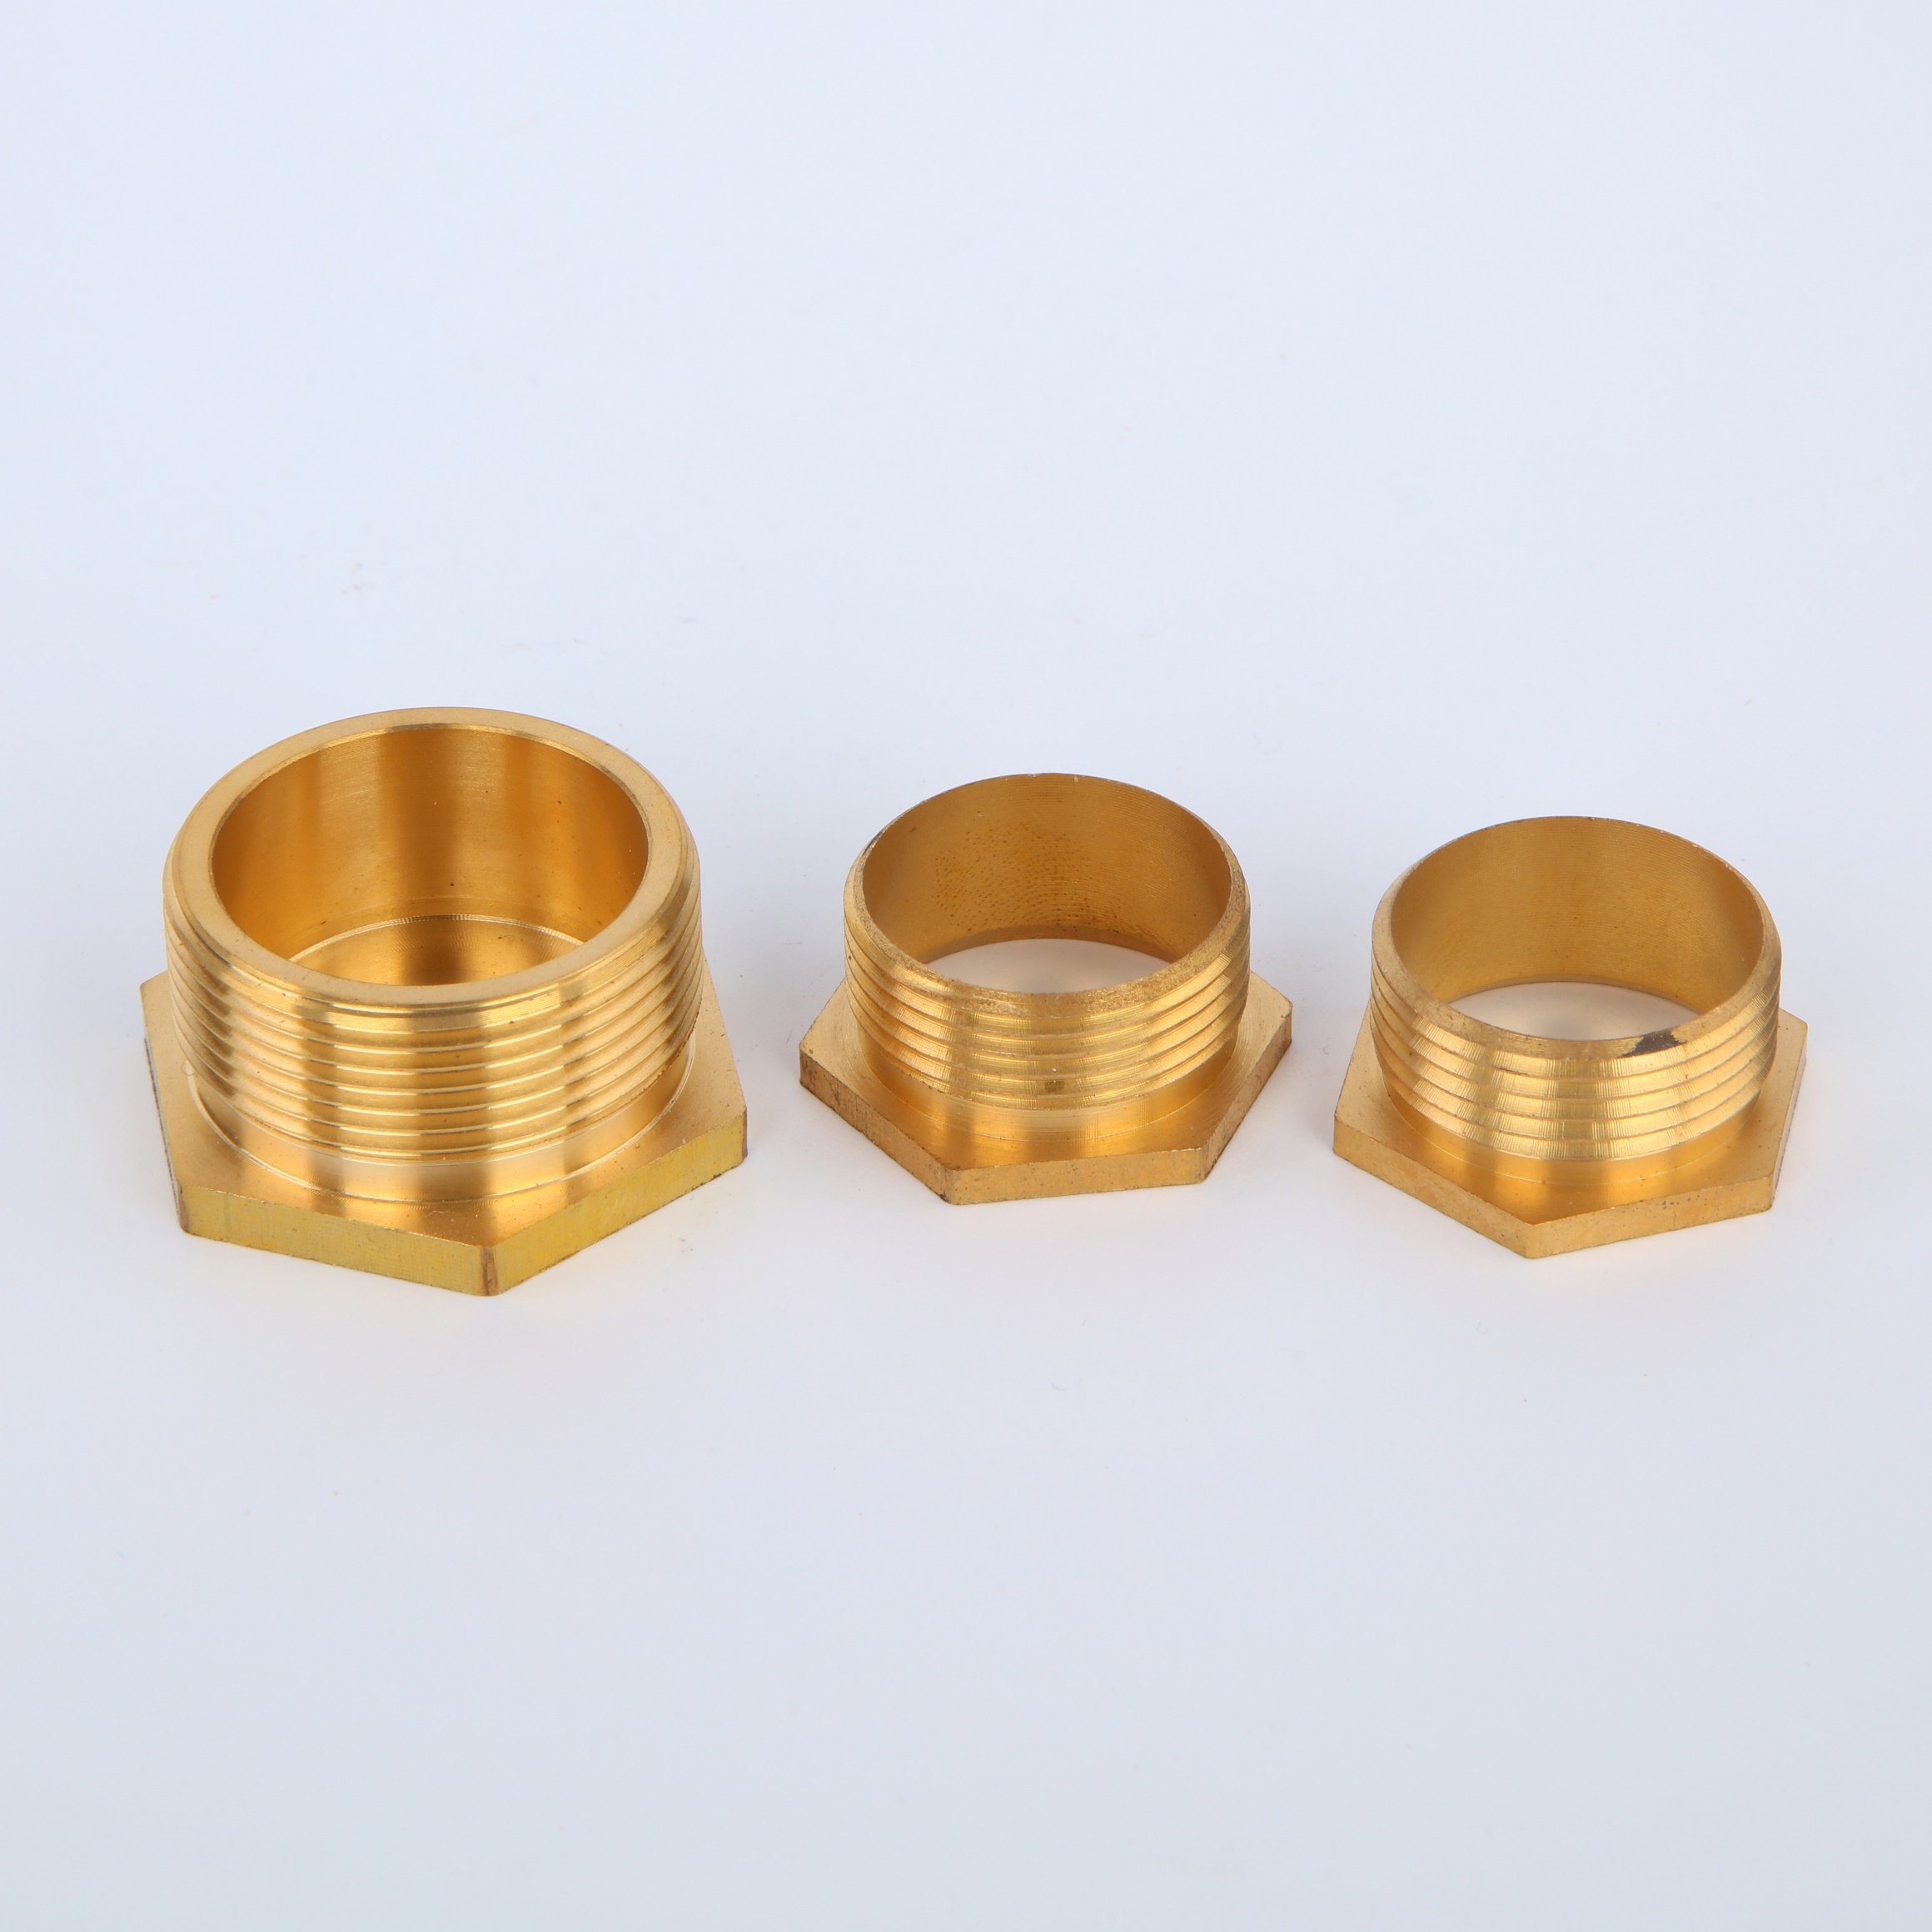 Nickle Plated Flexible Conduit Adatpor Brass Material